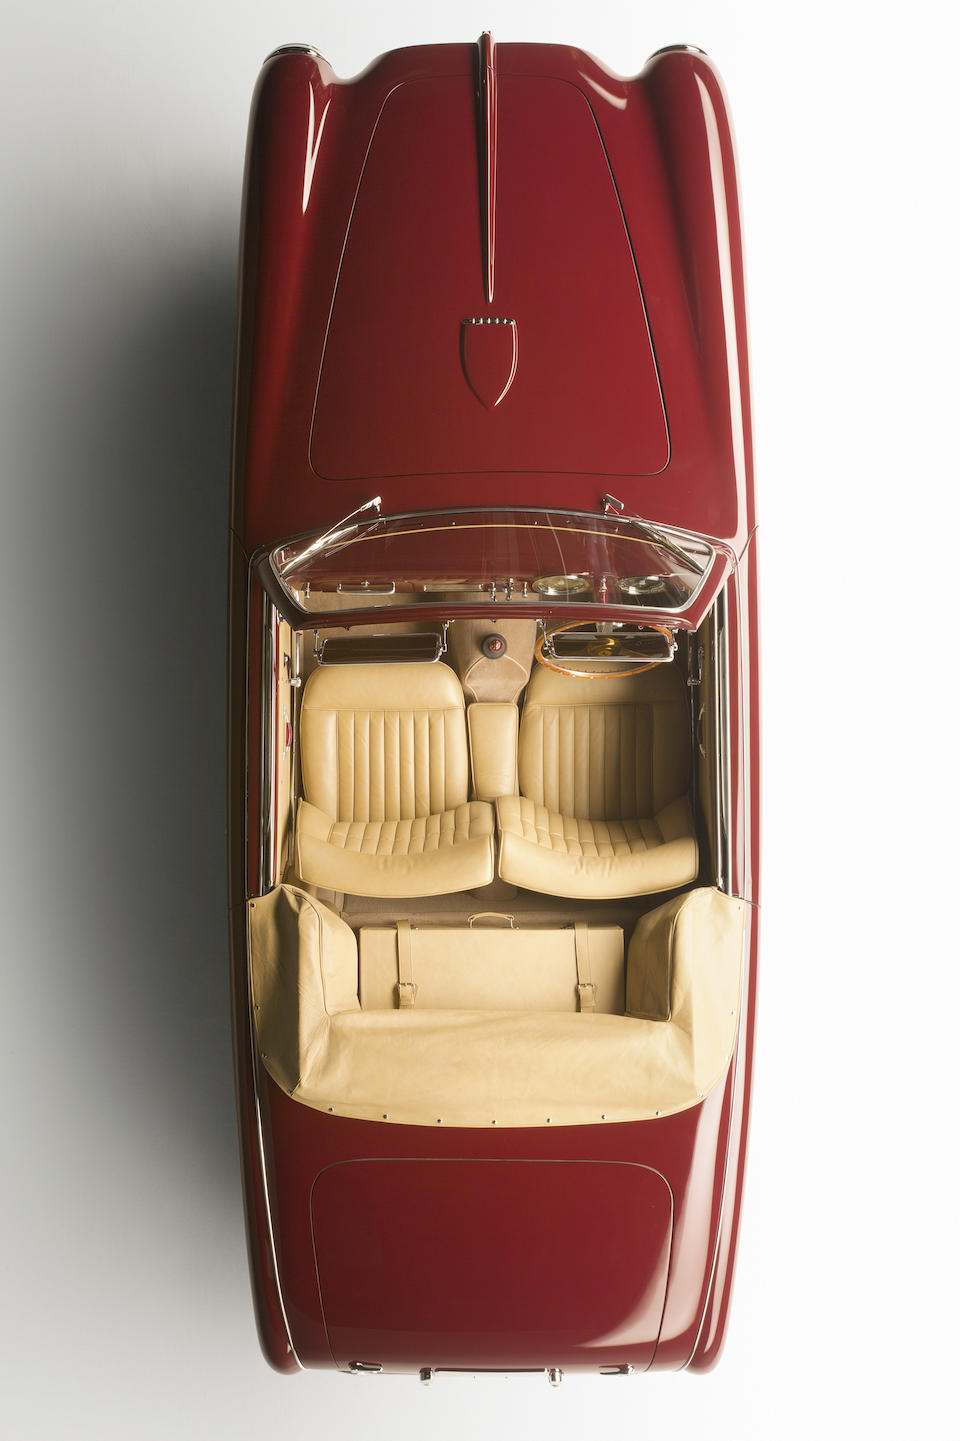 Rare 1951 Ferrari 212 Inter Cabriolet for sale with Bonhams